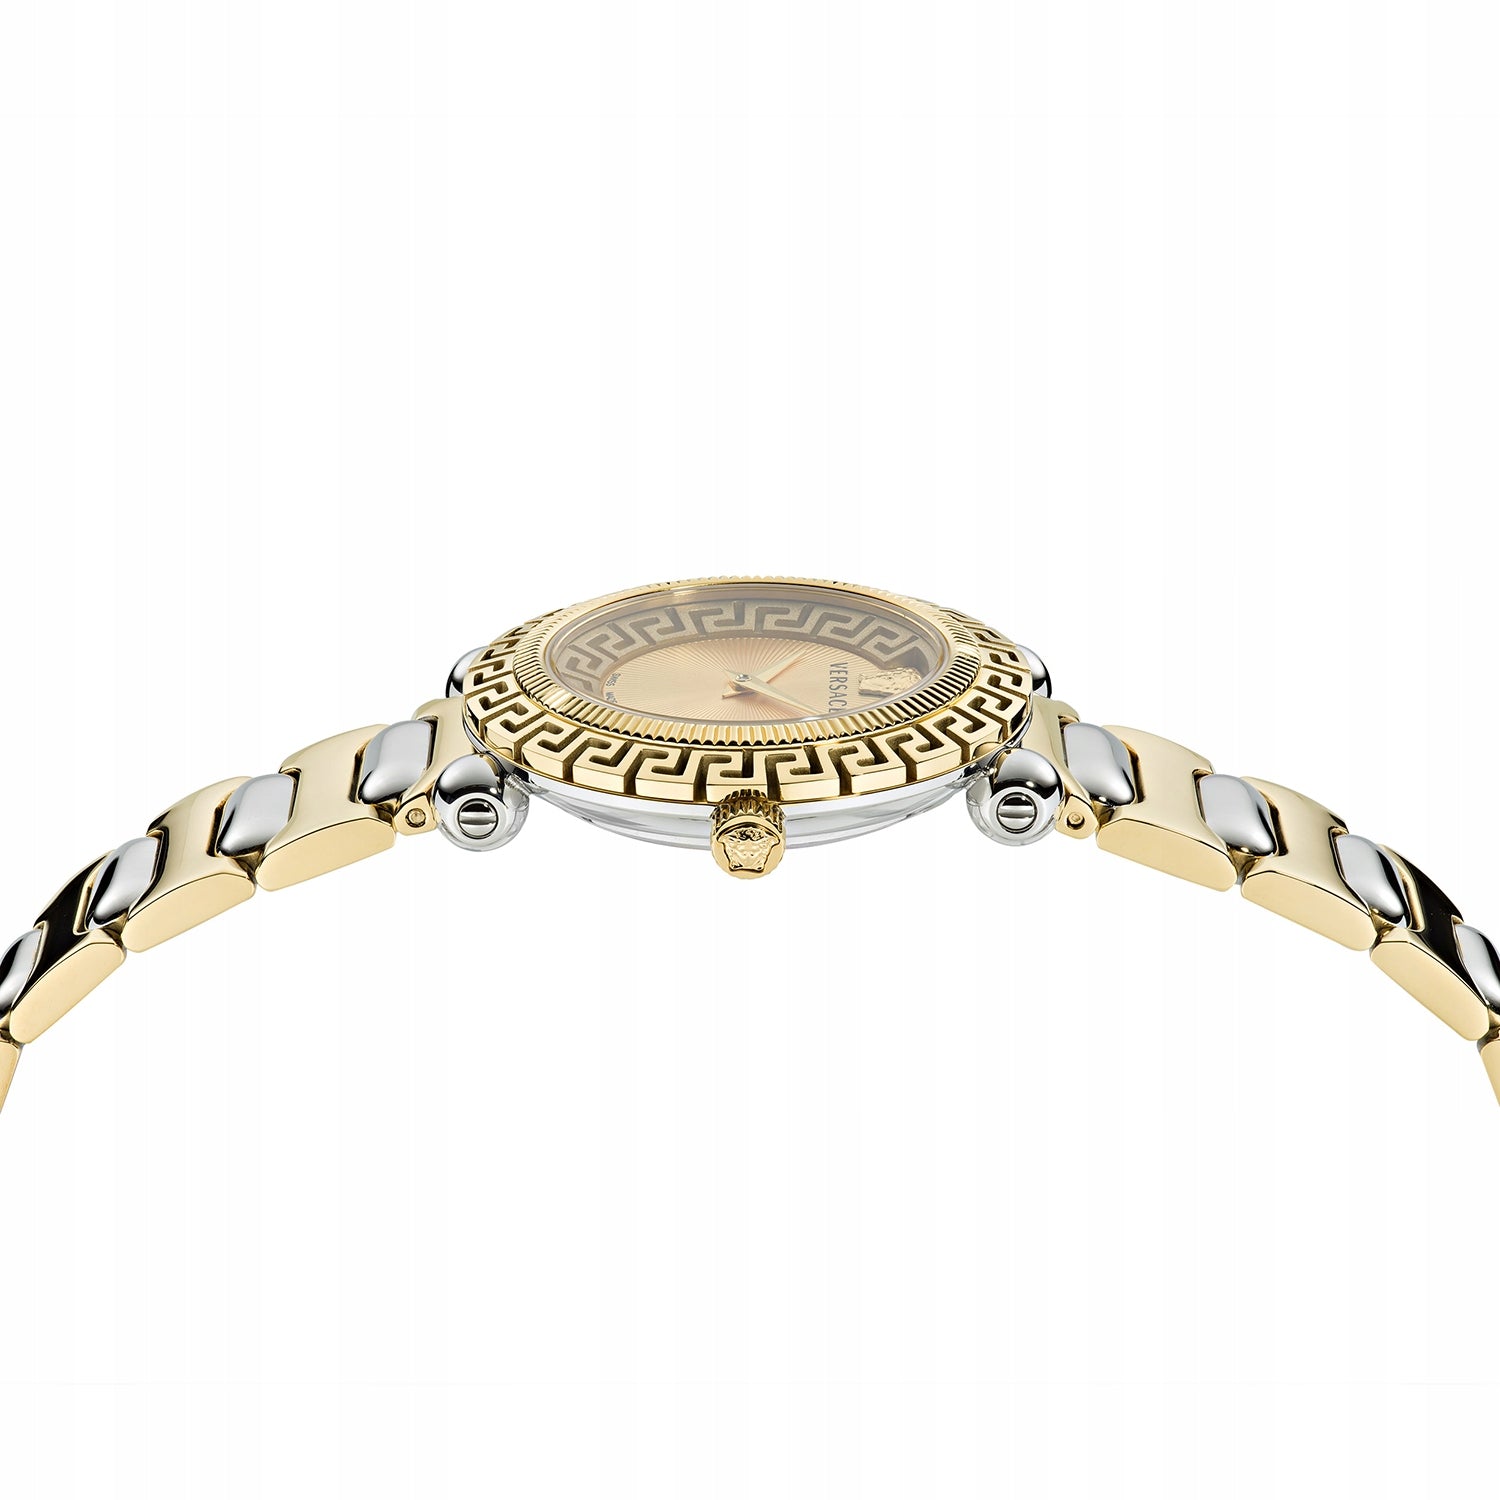 Ladies Iconic Greca Twist Watch VE6I00423 Versace